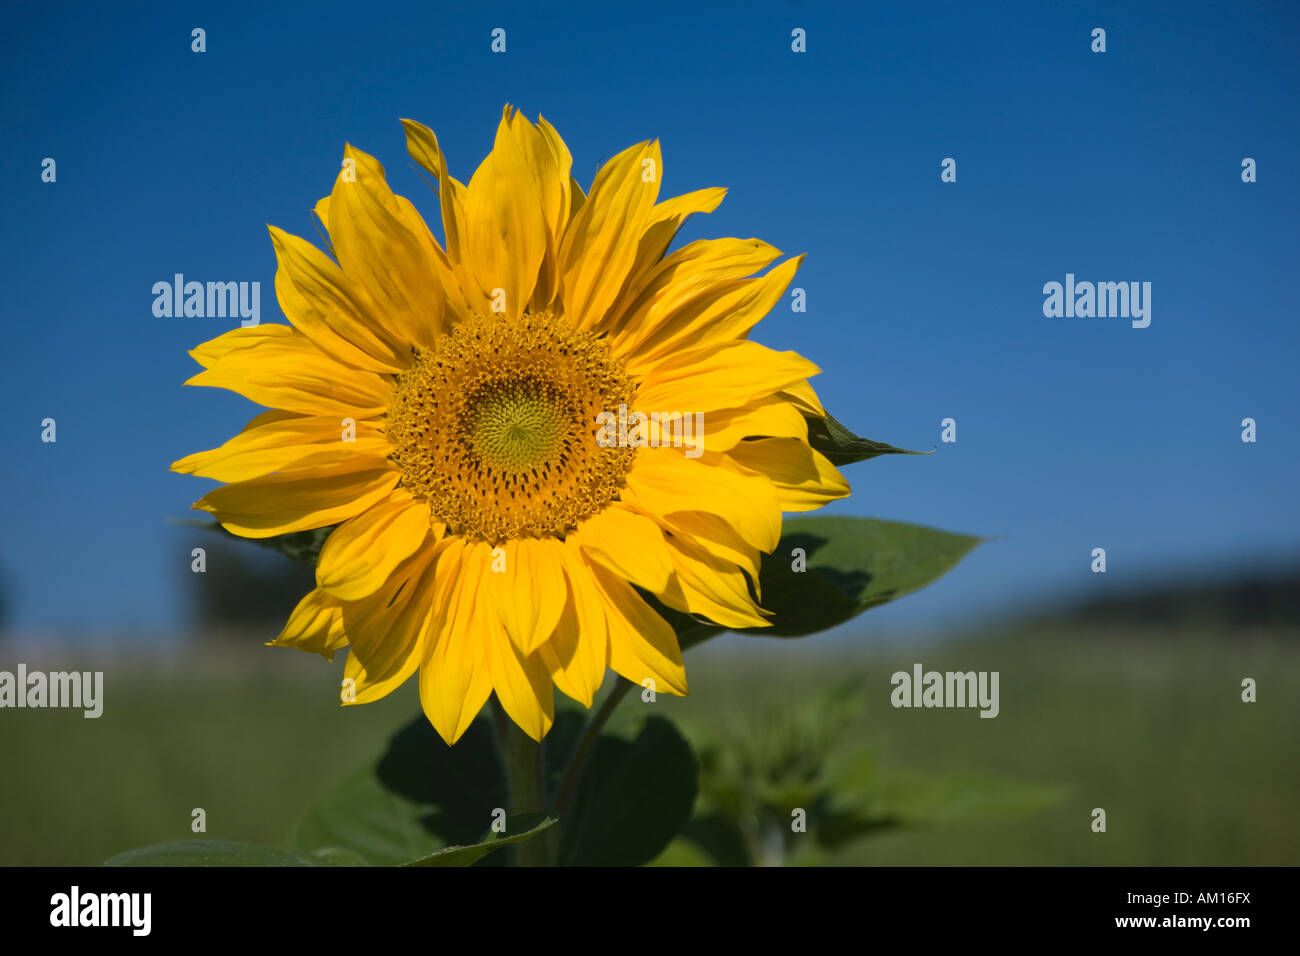 Sun flower (Helianthus annuus) Stock Photo